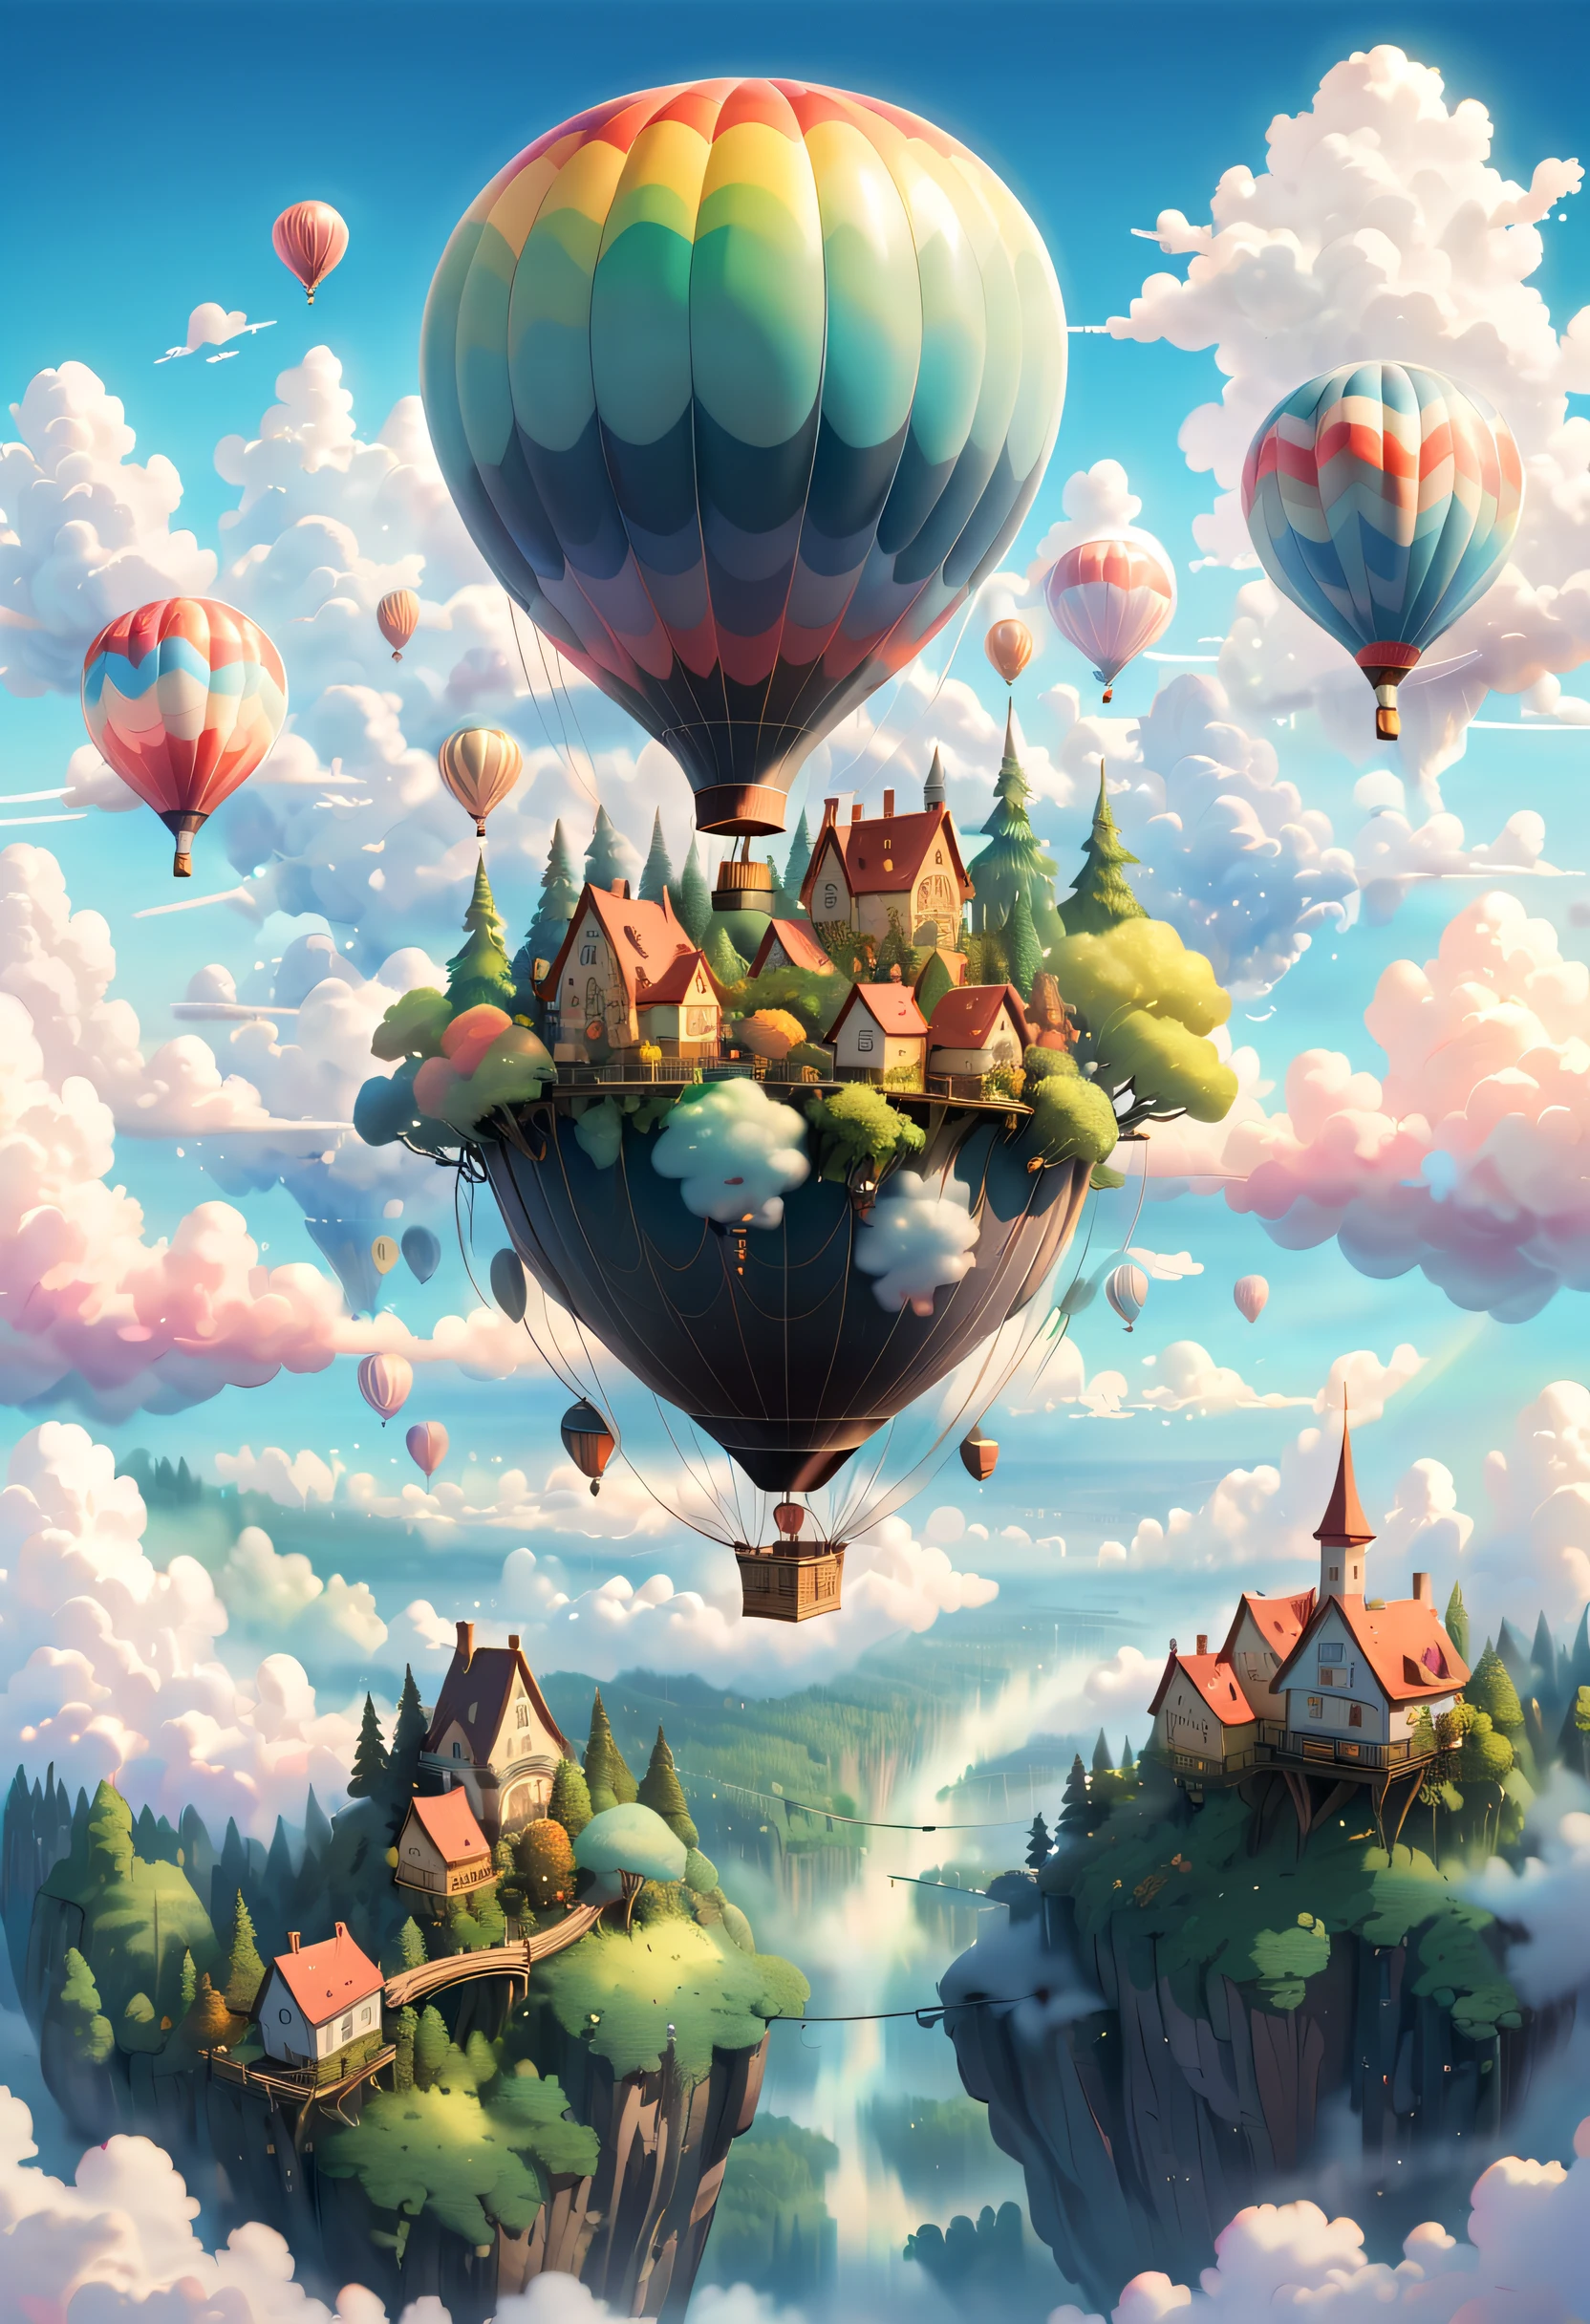 (Stellen Sie sich eine märchenhafte Waldstadt vor, die über den Wolken schwebt, die Farben des Himmels widerspiegeln. Die Stadt kann Brücken und Gehwege haben, die verschiedene Gebäude verbinden, und am Himmel schwebt ein riesiger und prächtiger Heißluftballon und andere schwebende Objekte.) Dieses Gemälde kann eine traumhafte und ruhige Atmosphäre haben, mit weichen Wolken und einer bunten RGB-Palette. (Farben im Studio Ghibli-Stil, filmische Beleuchtung, Ich-Perspektive, Winkel, Panorama-, ultra-wide Winkel, Ultra-High-Definition, anatomisch korrekt, Meisterwerk-Qualität, kuratiert, Preisgekrönt, beste Qualität.)